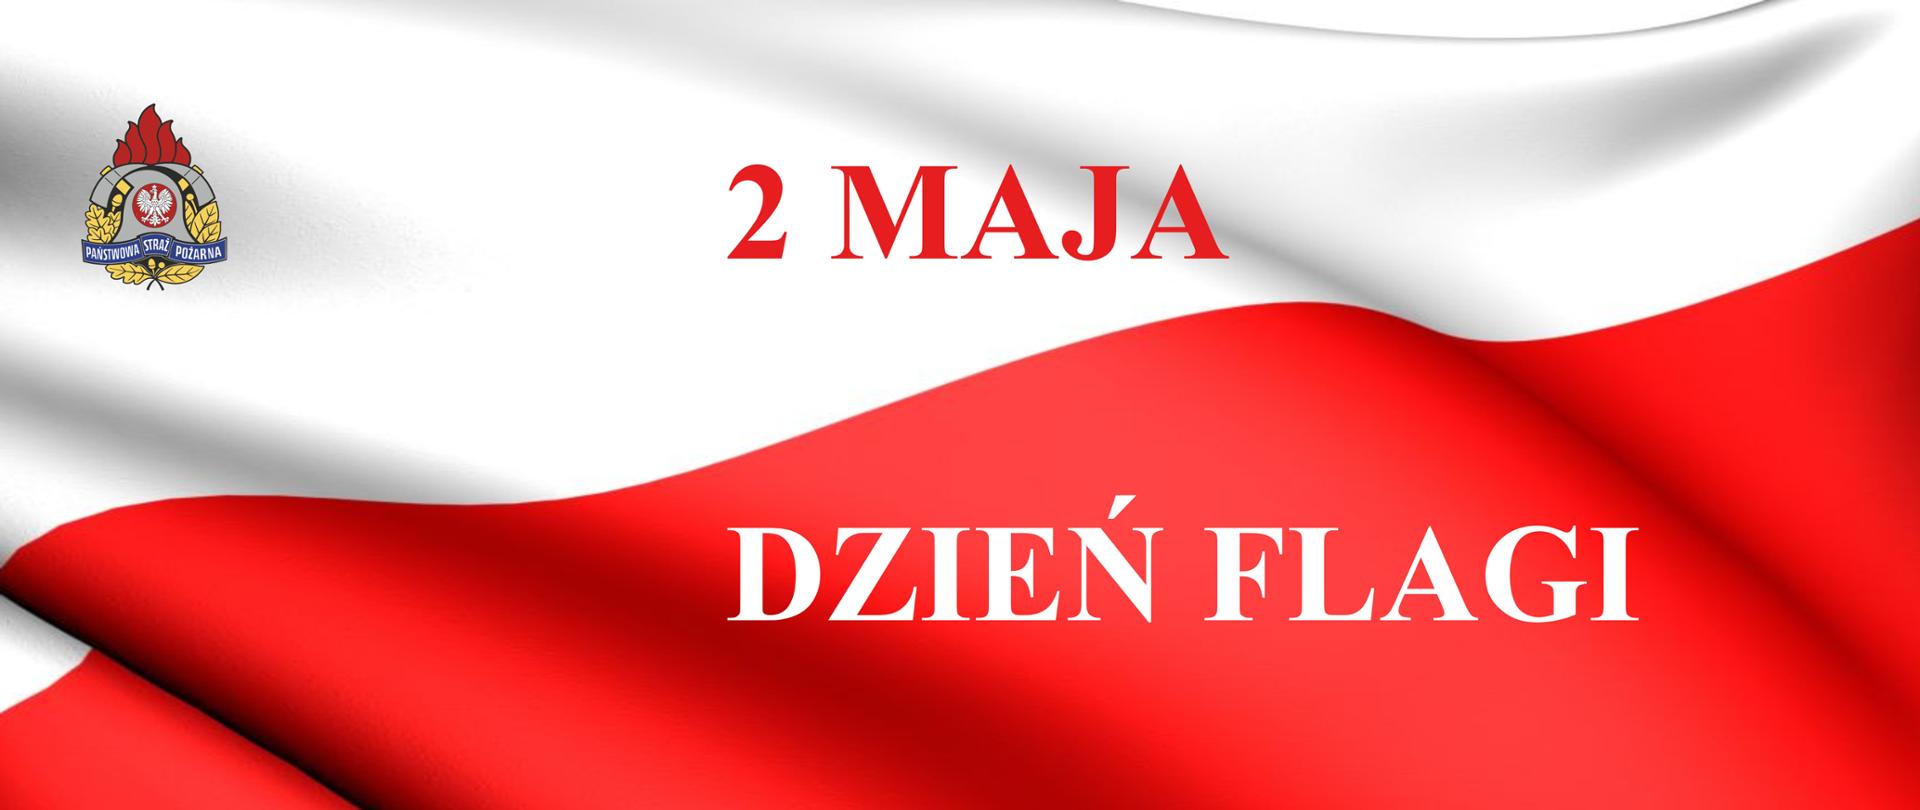 flaga biało czerwona z napisem 2 maja dzień flagi 